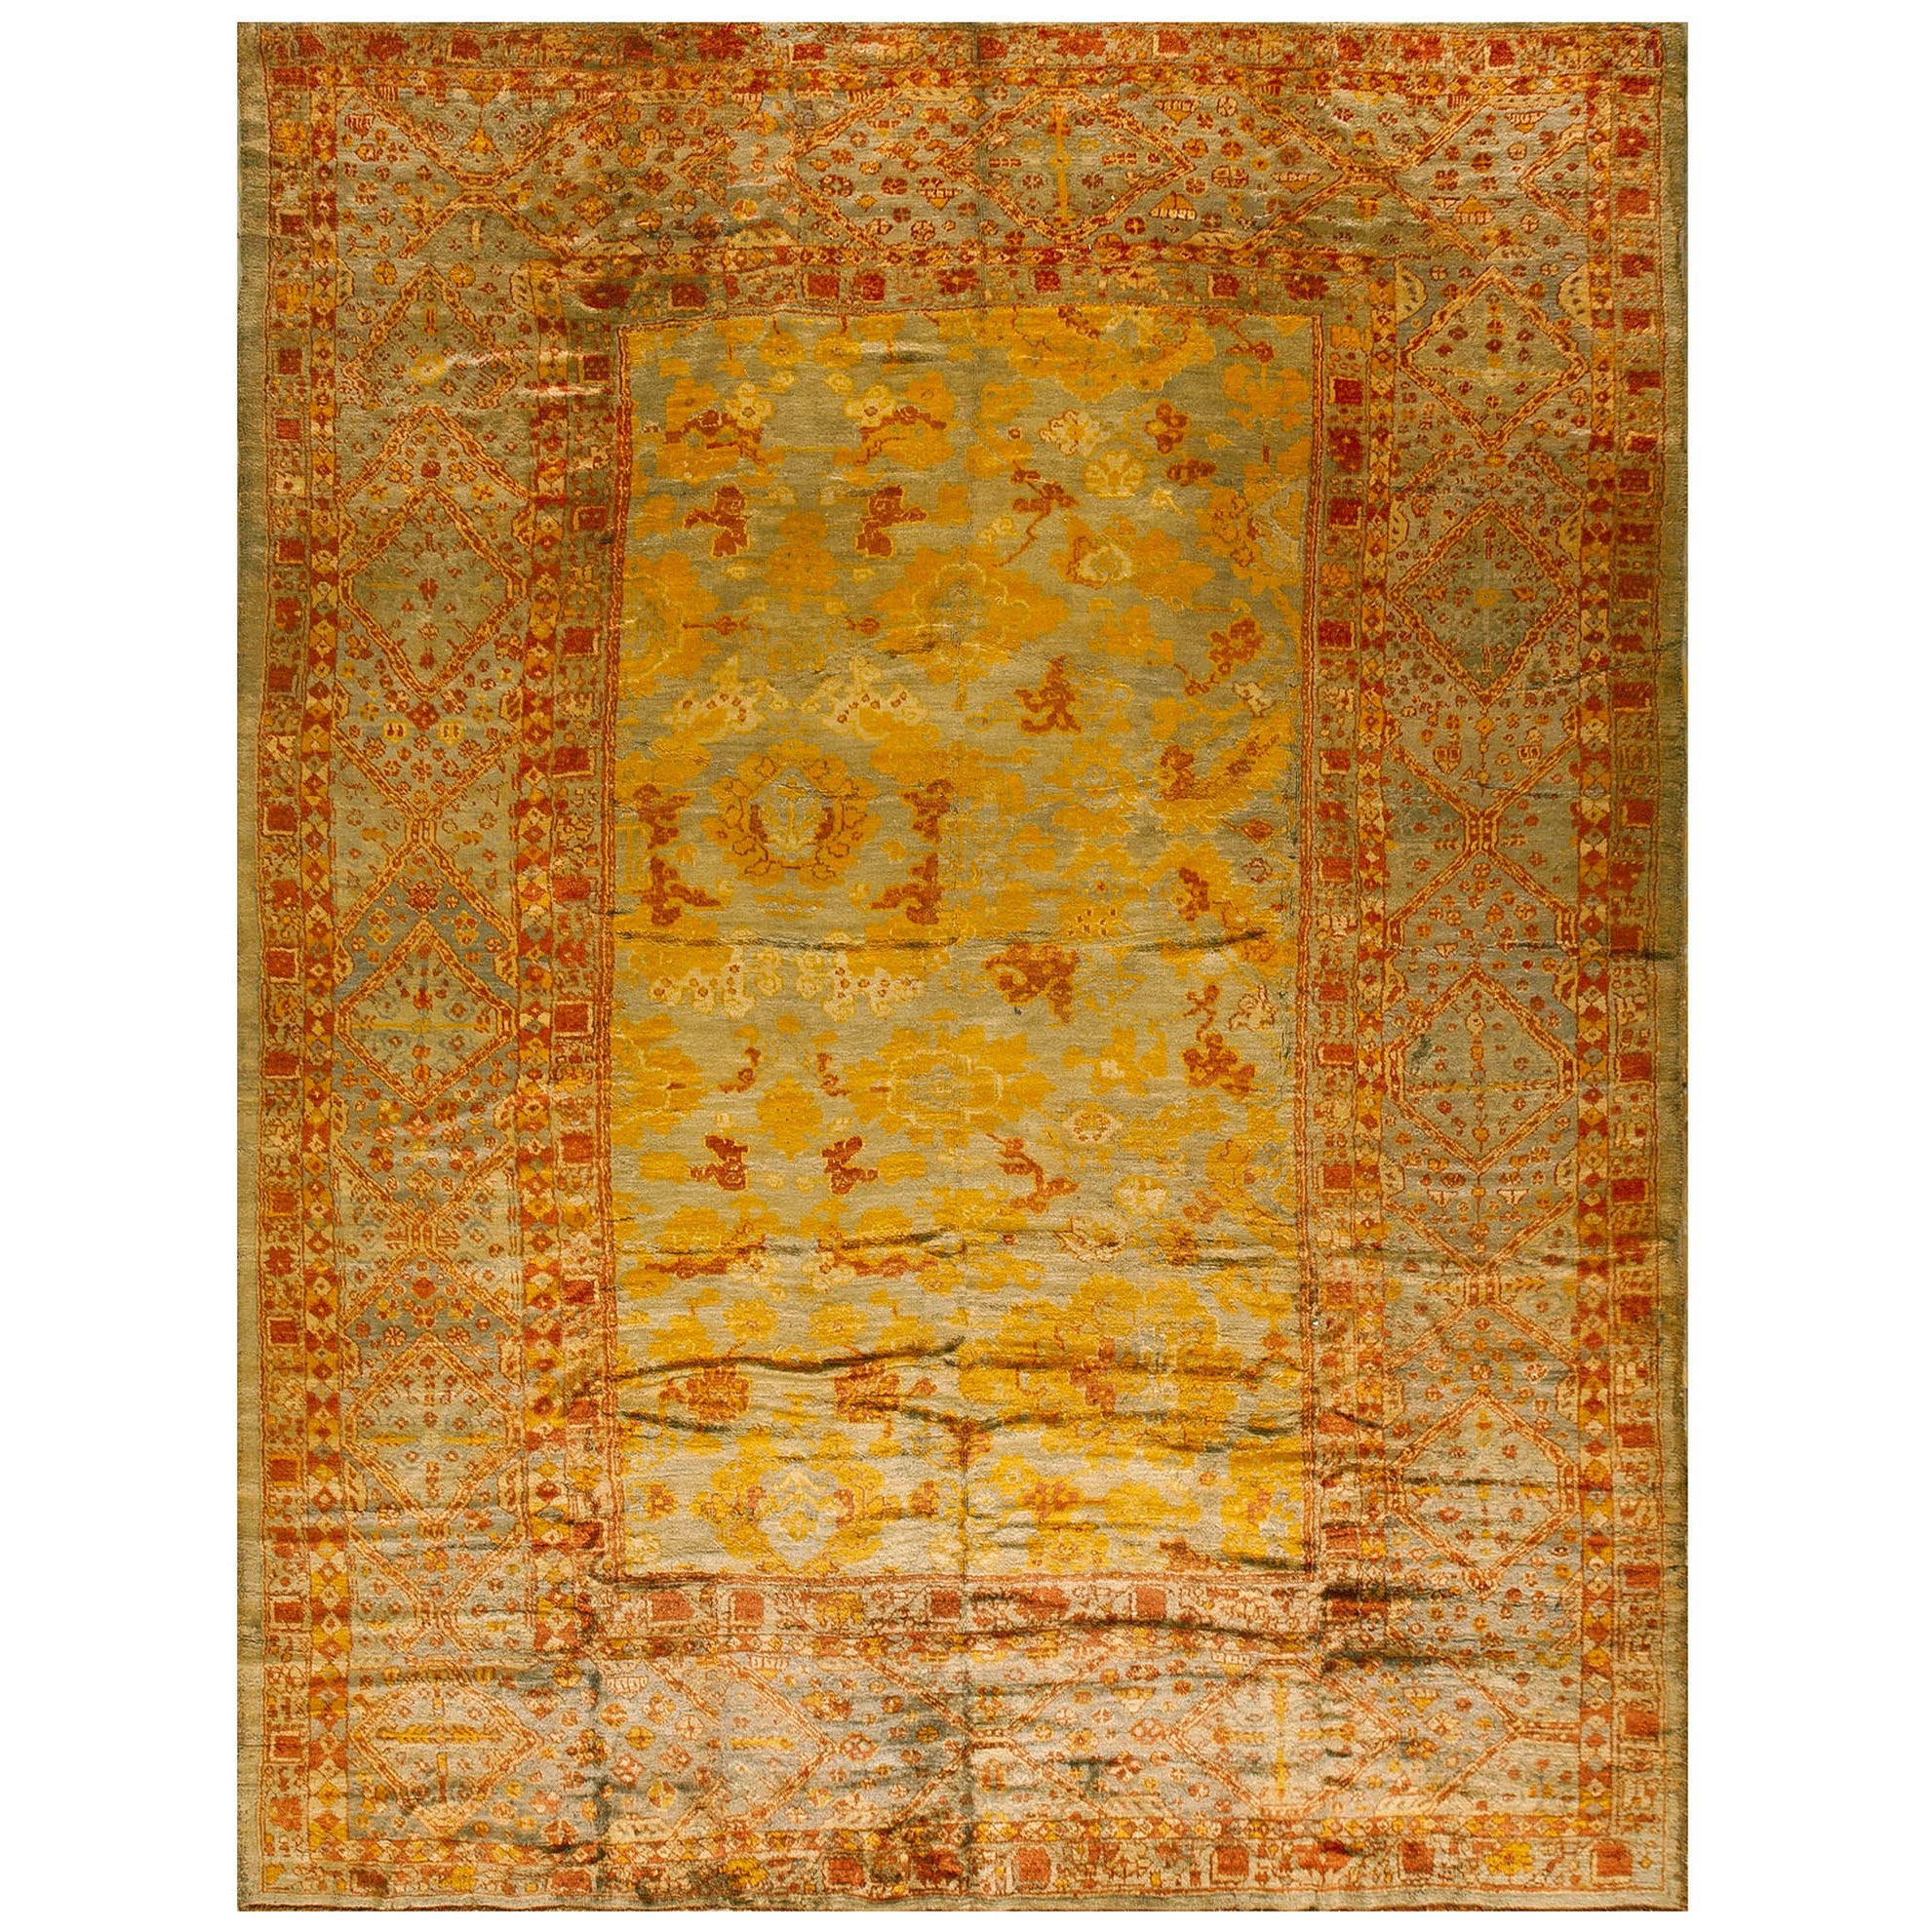 Türkischer Angora- Oushak-Teppich des 19. Jahrhunderts ( 10'1" x 13'2" - 307 x 401)